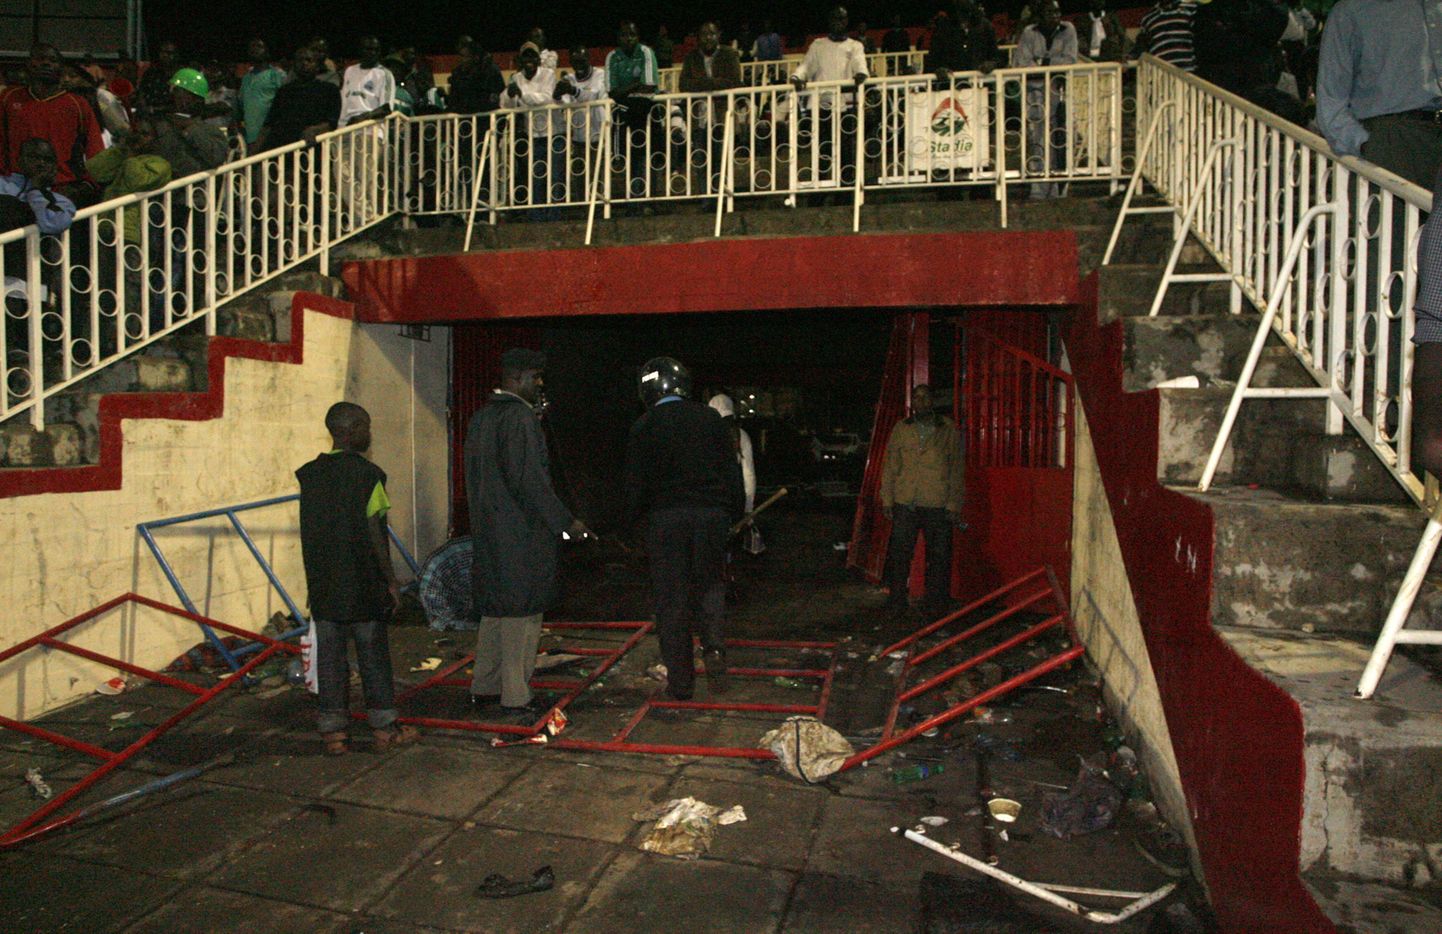 Nairobi staadioni sissekäik, kus jalgpallifännid surnuks tallati.